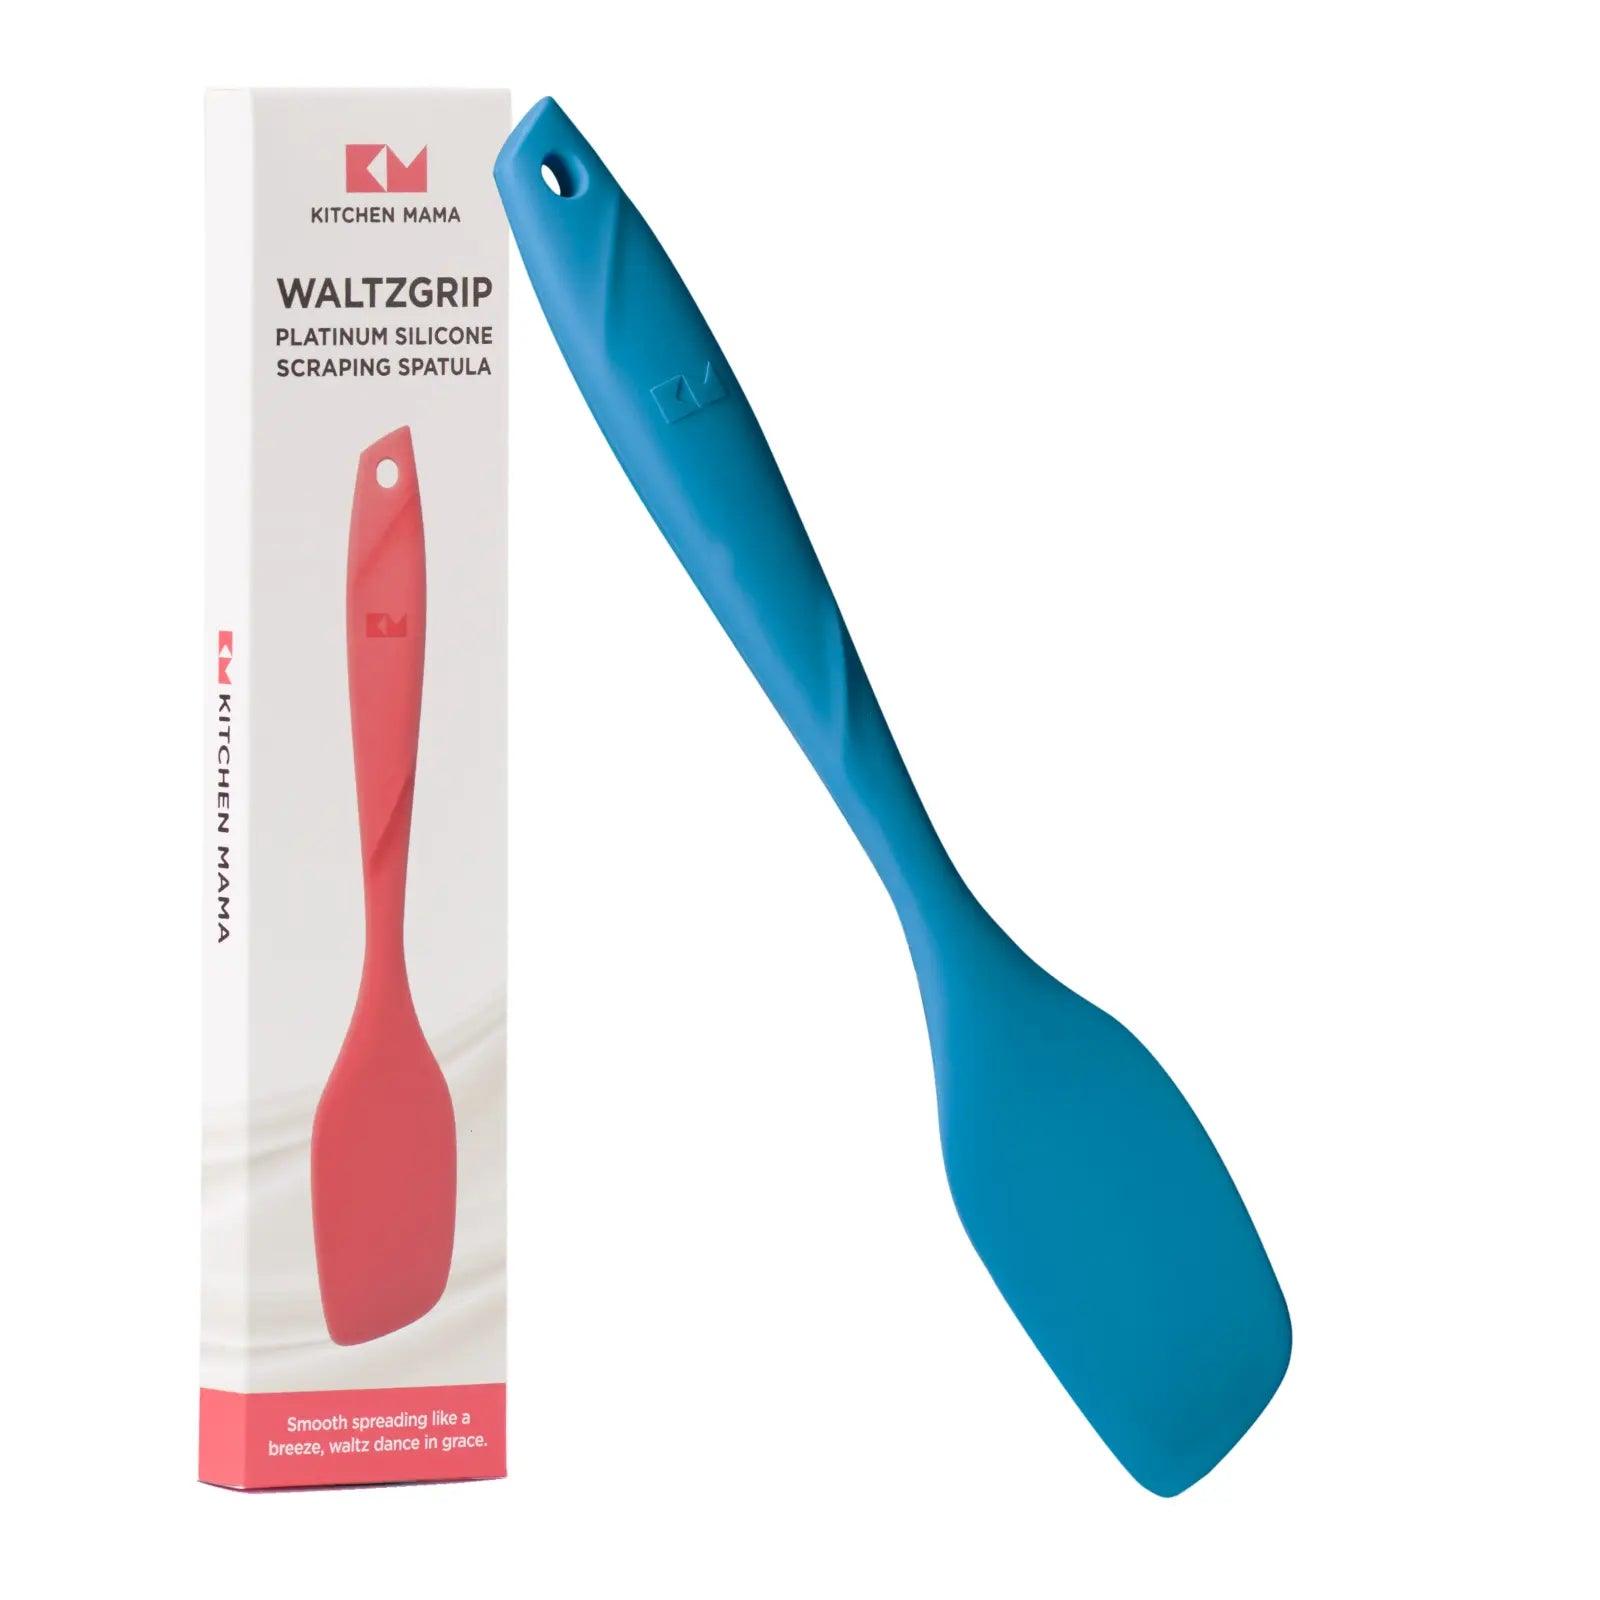 Kitchen Mama scraping spatula, Waltzgrip platinum silicone scraping spatula, blue